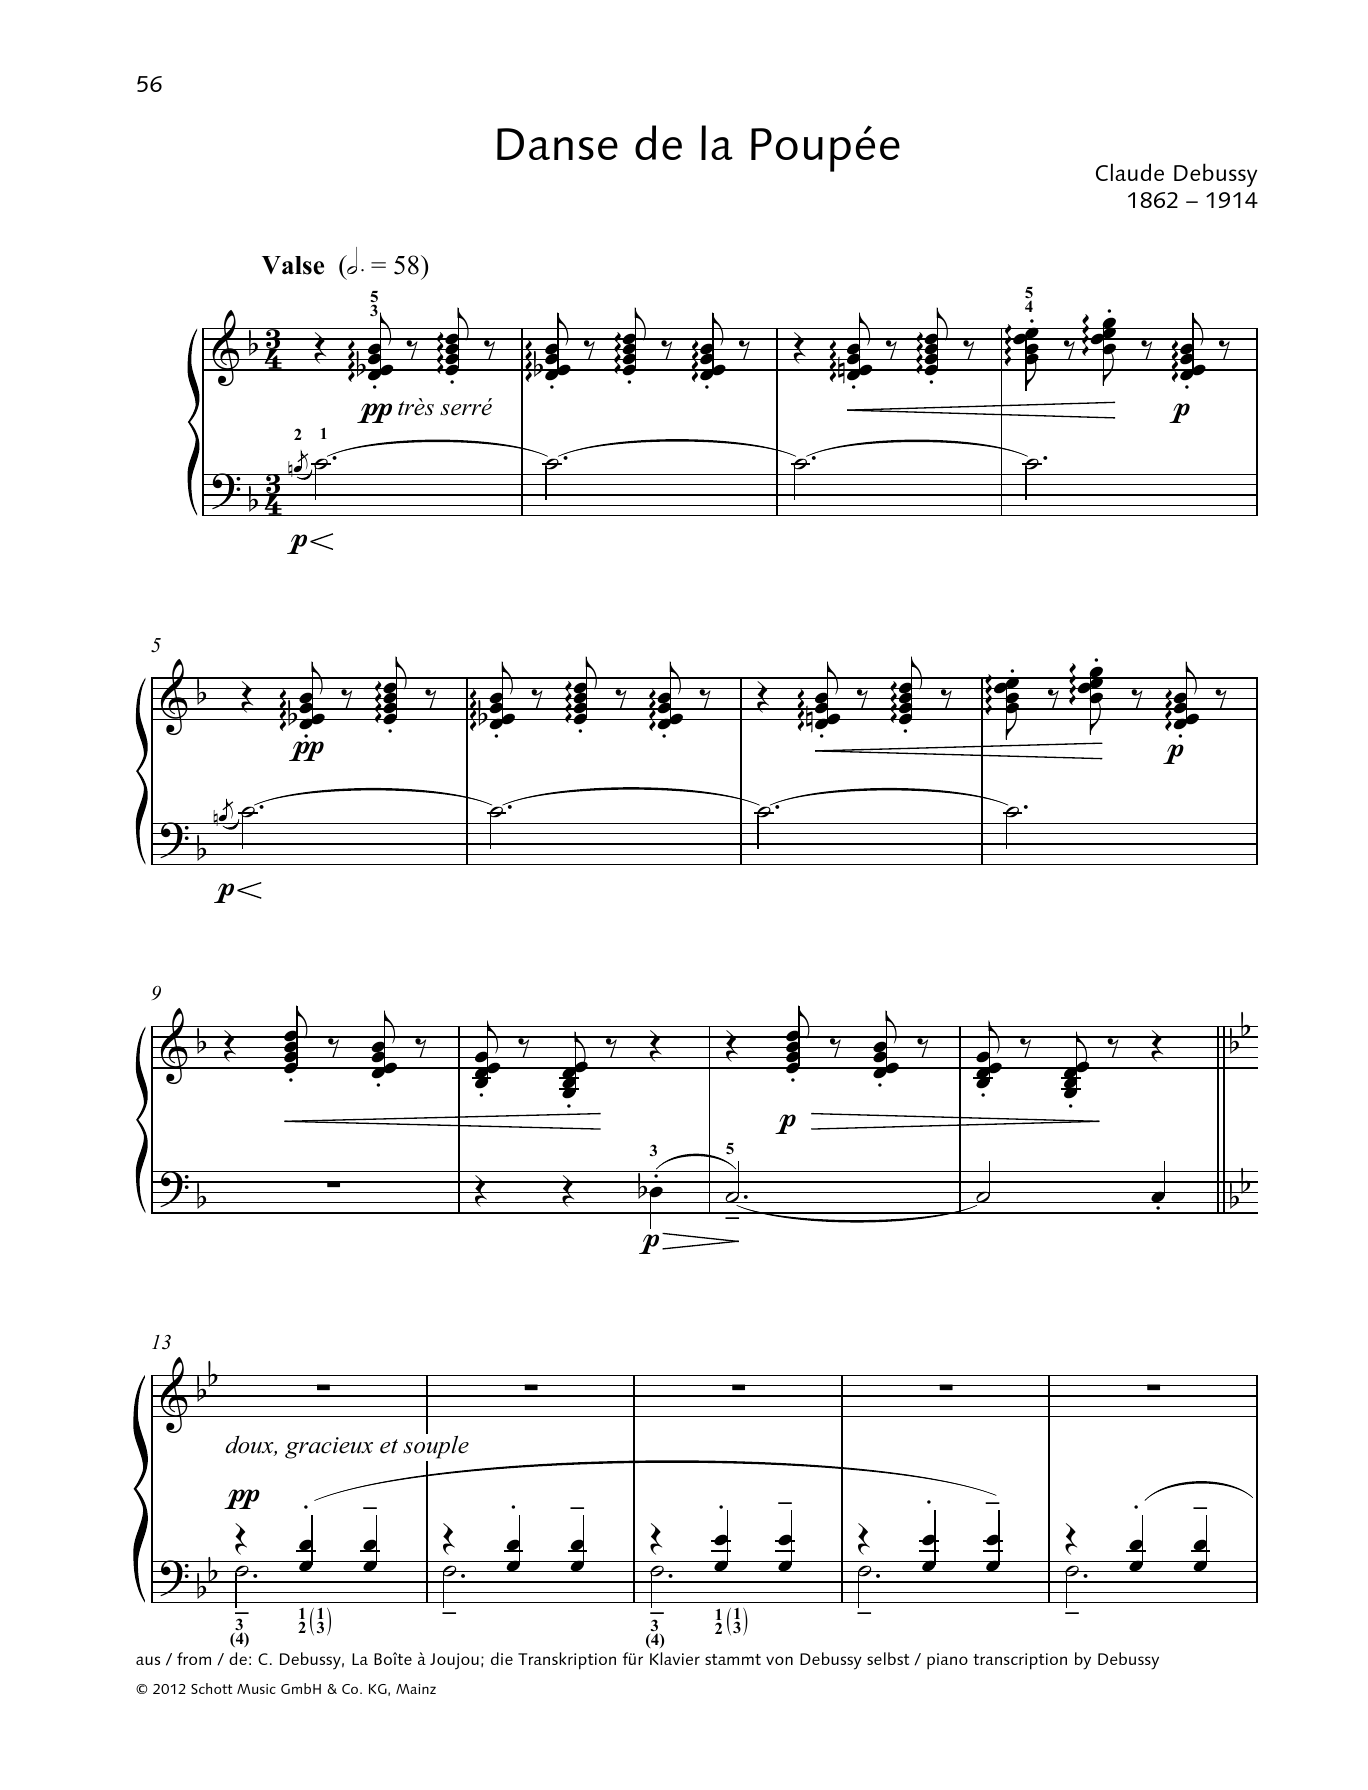 Download Claude Debussy Danse de la poupee Sheet Music